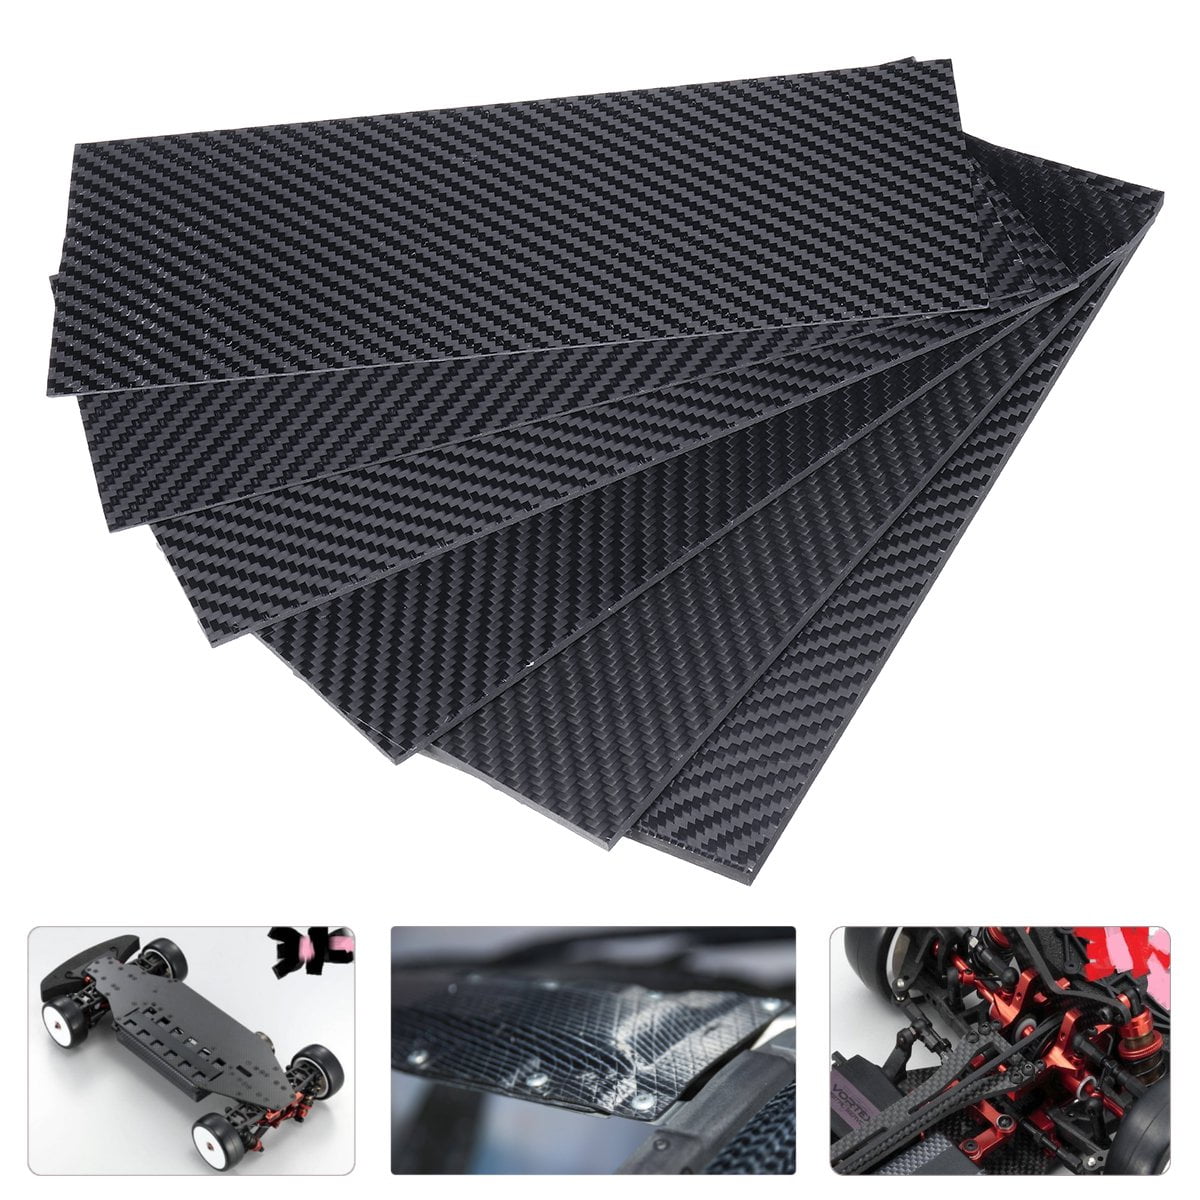 Lasamot 3K Carbon Fiber Plate Panel Plain Twill Weave Matt Glossy Surface Full Carbon Fiber Plate Panel Sheet 